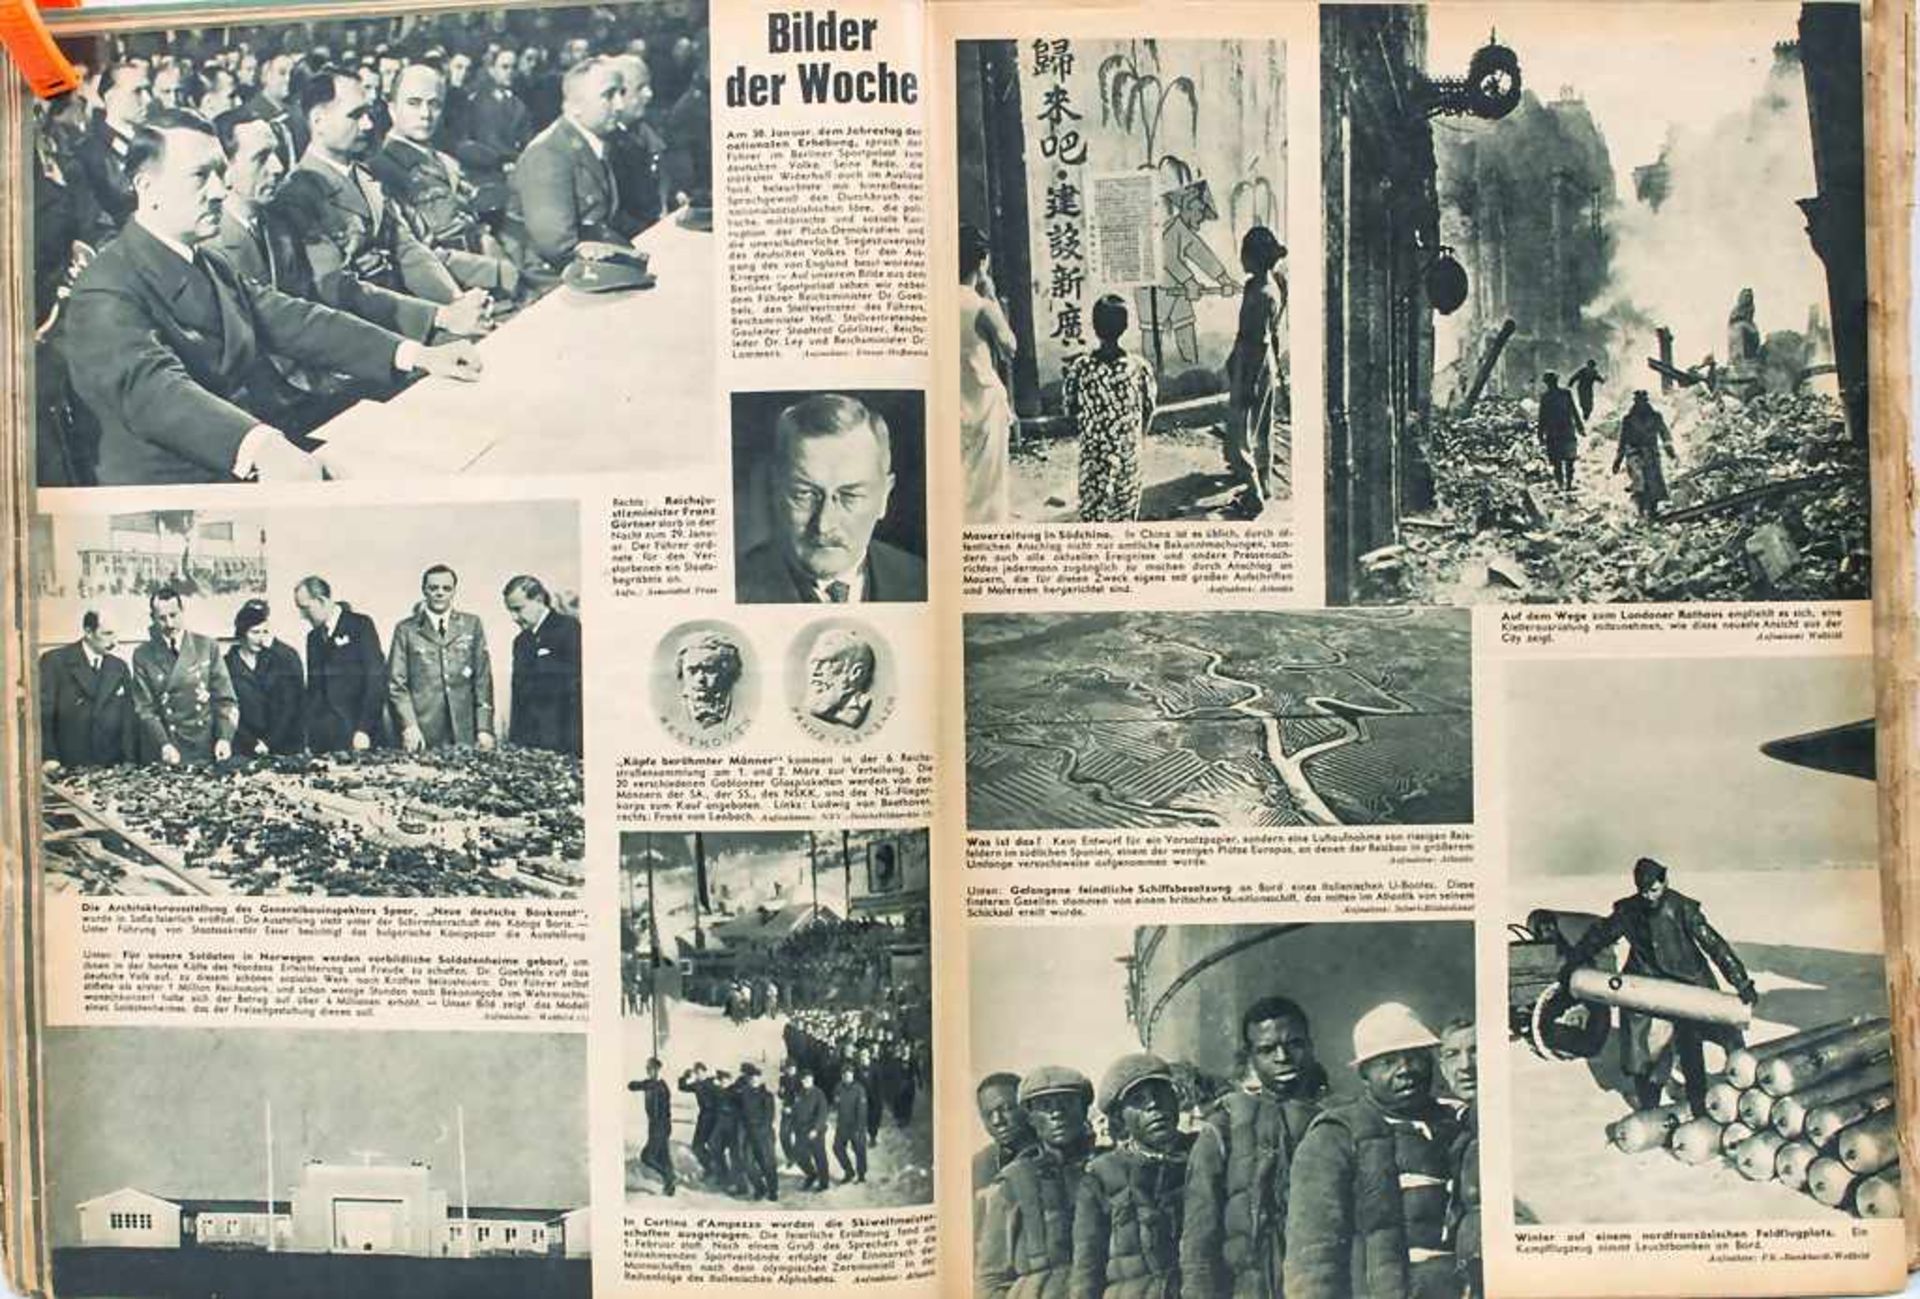 Magazin 'Der Rundblick' Drittes Reich / The magazine 'Der Rundblick' Third Reich - Image 4 of 5